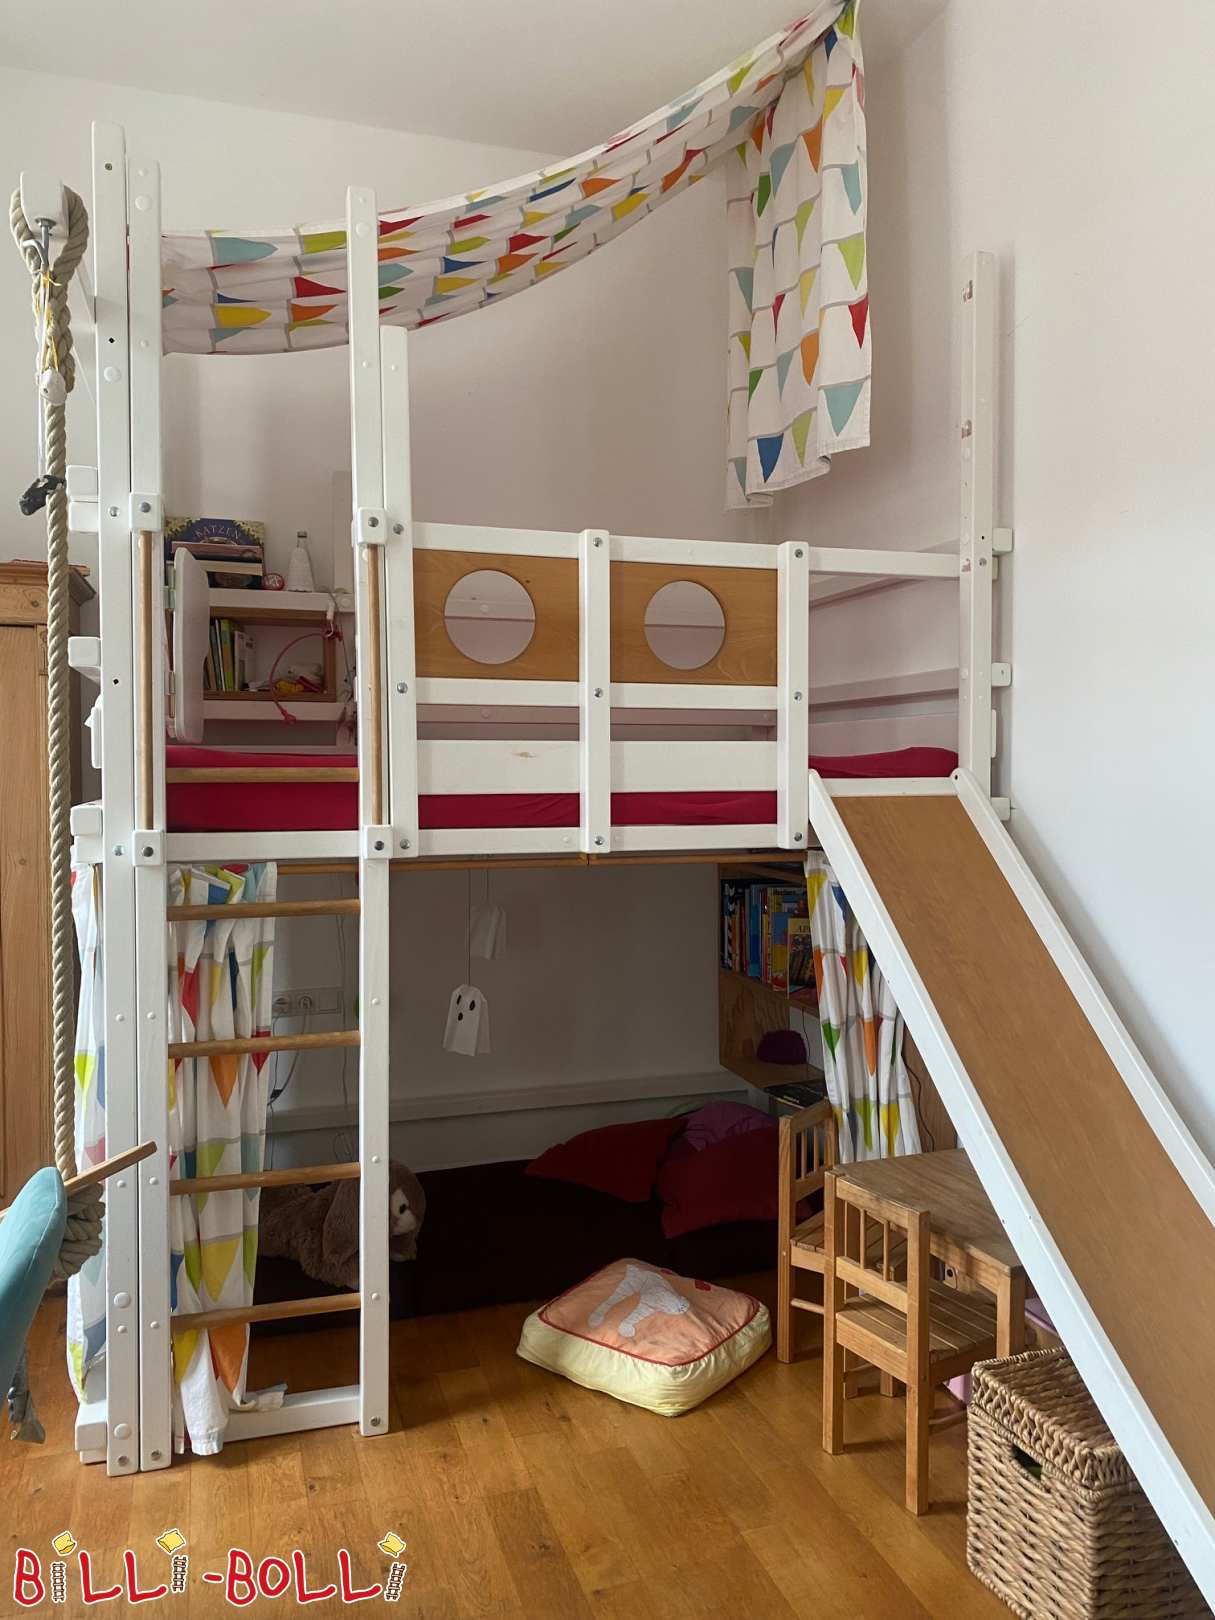 Mitw. Cama loft extralonga, branca, conversível como uma cama de canto 120x200 (Categoria: Cama alta crescendo com a criança usada)